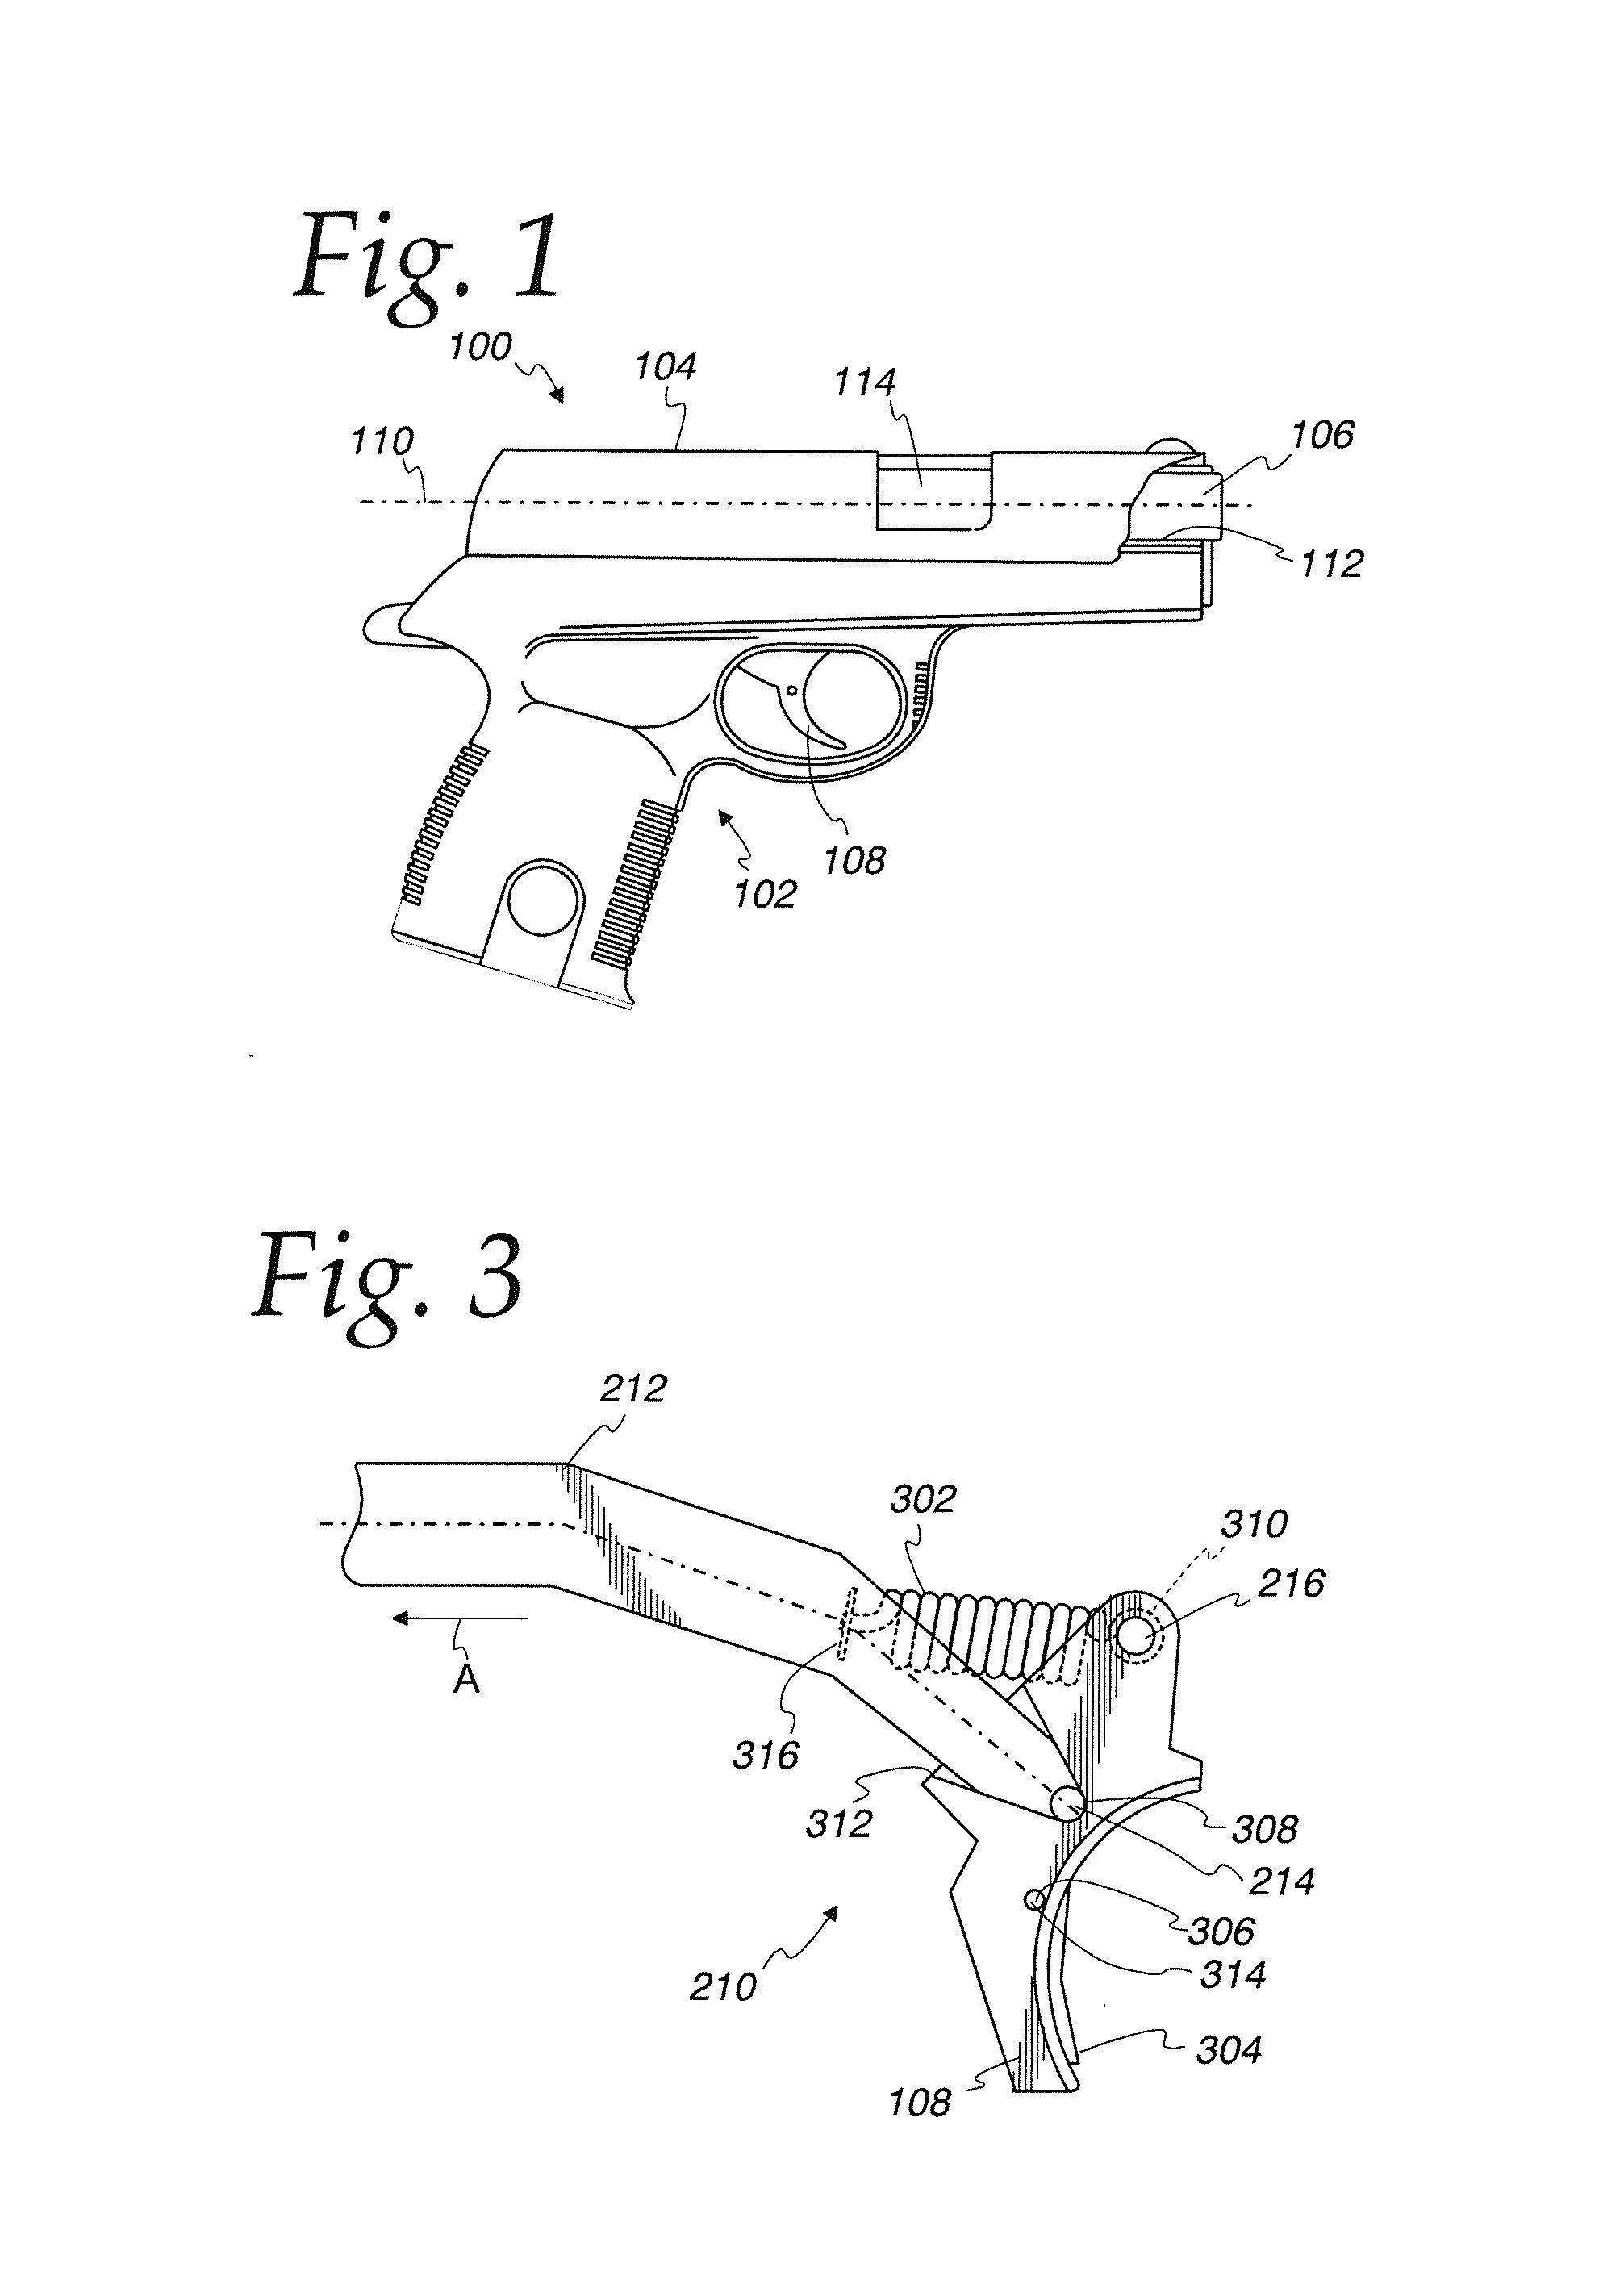 Firing mechanism for a firearm